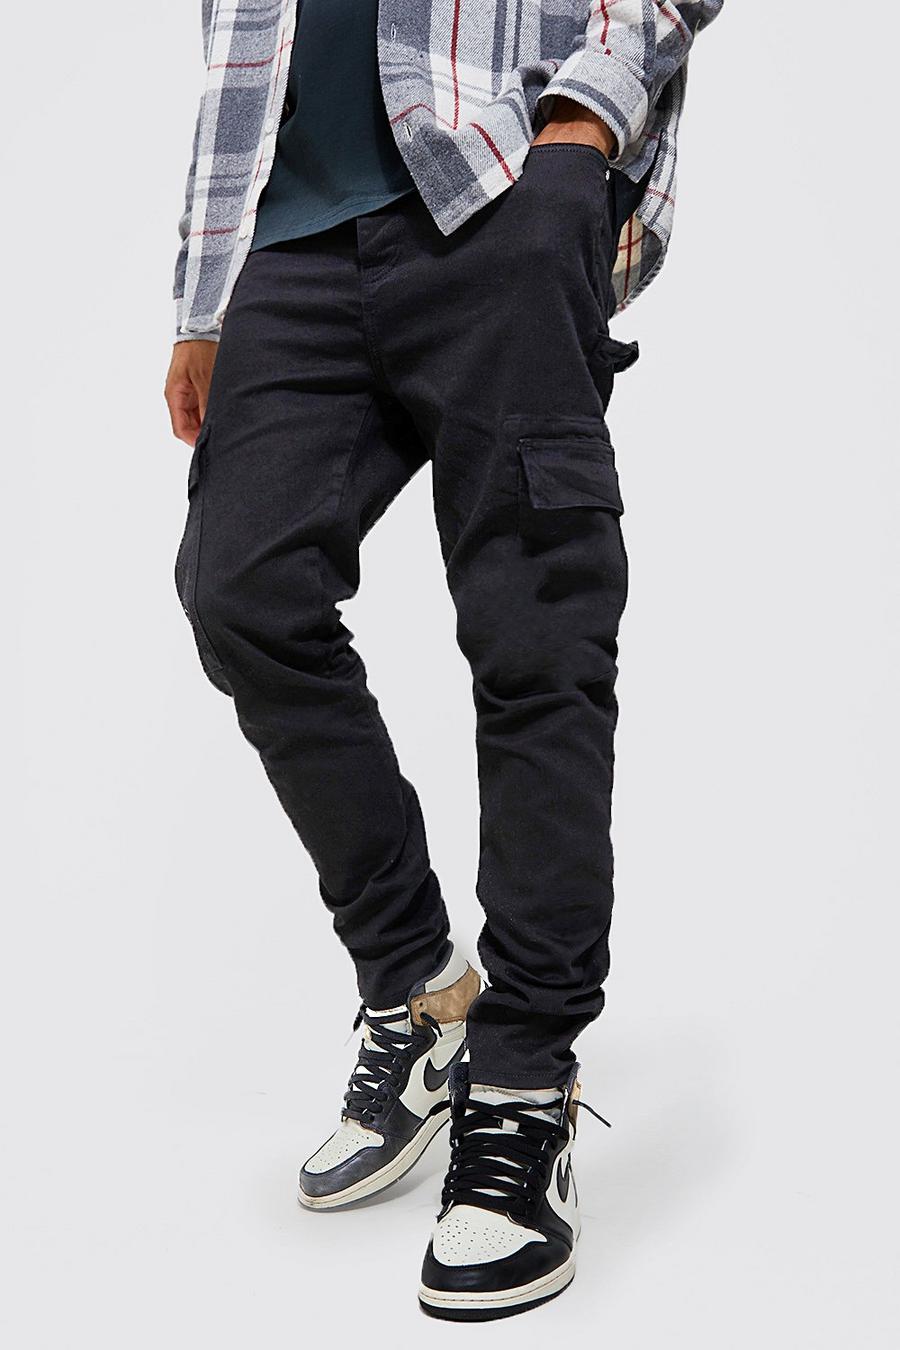 שחור negro סקיני ג'ינס דגמ"ח נמתח בסגנון נגרים, לגברים גבוהים image number 1